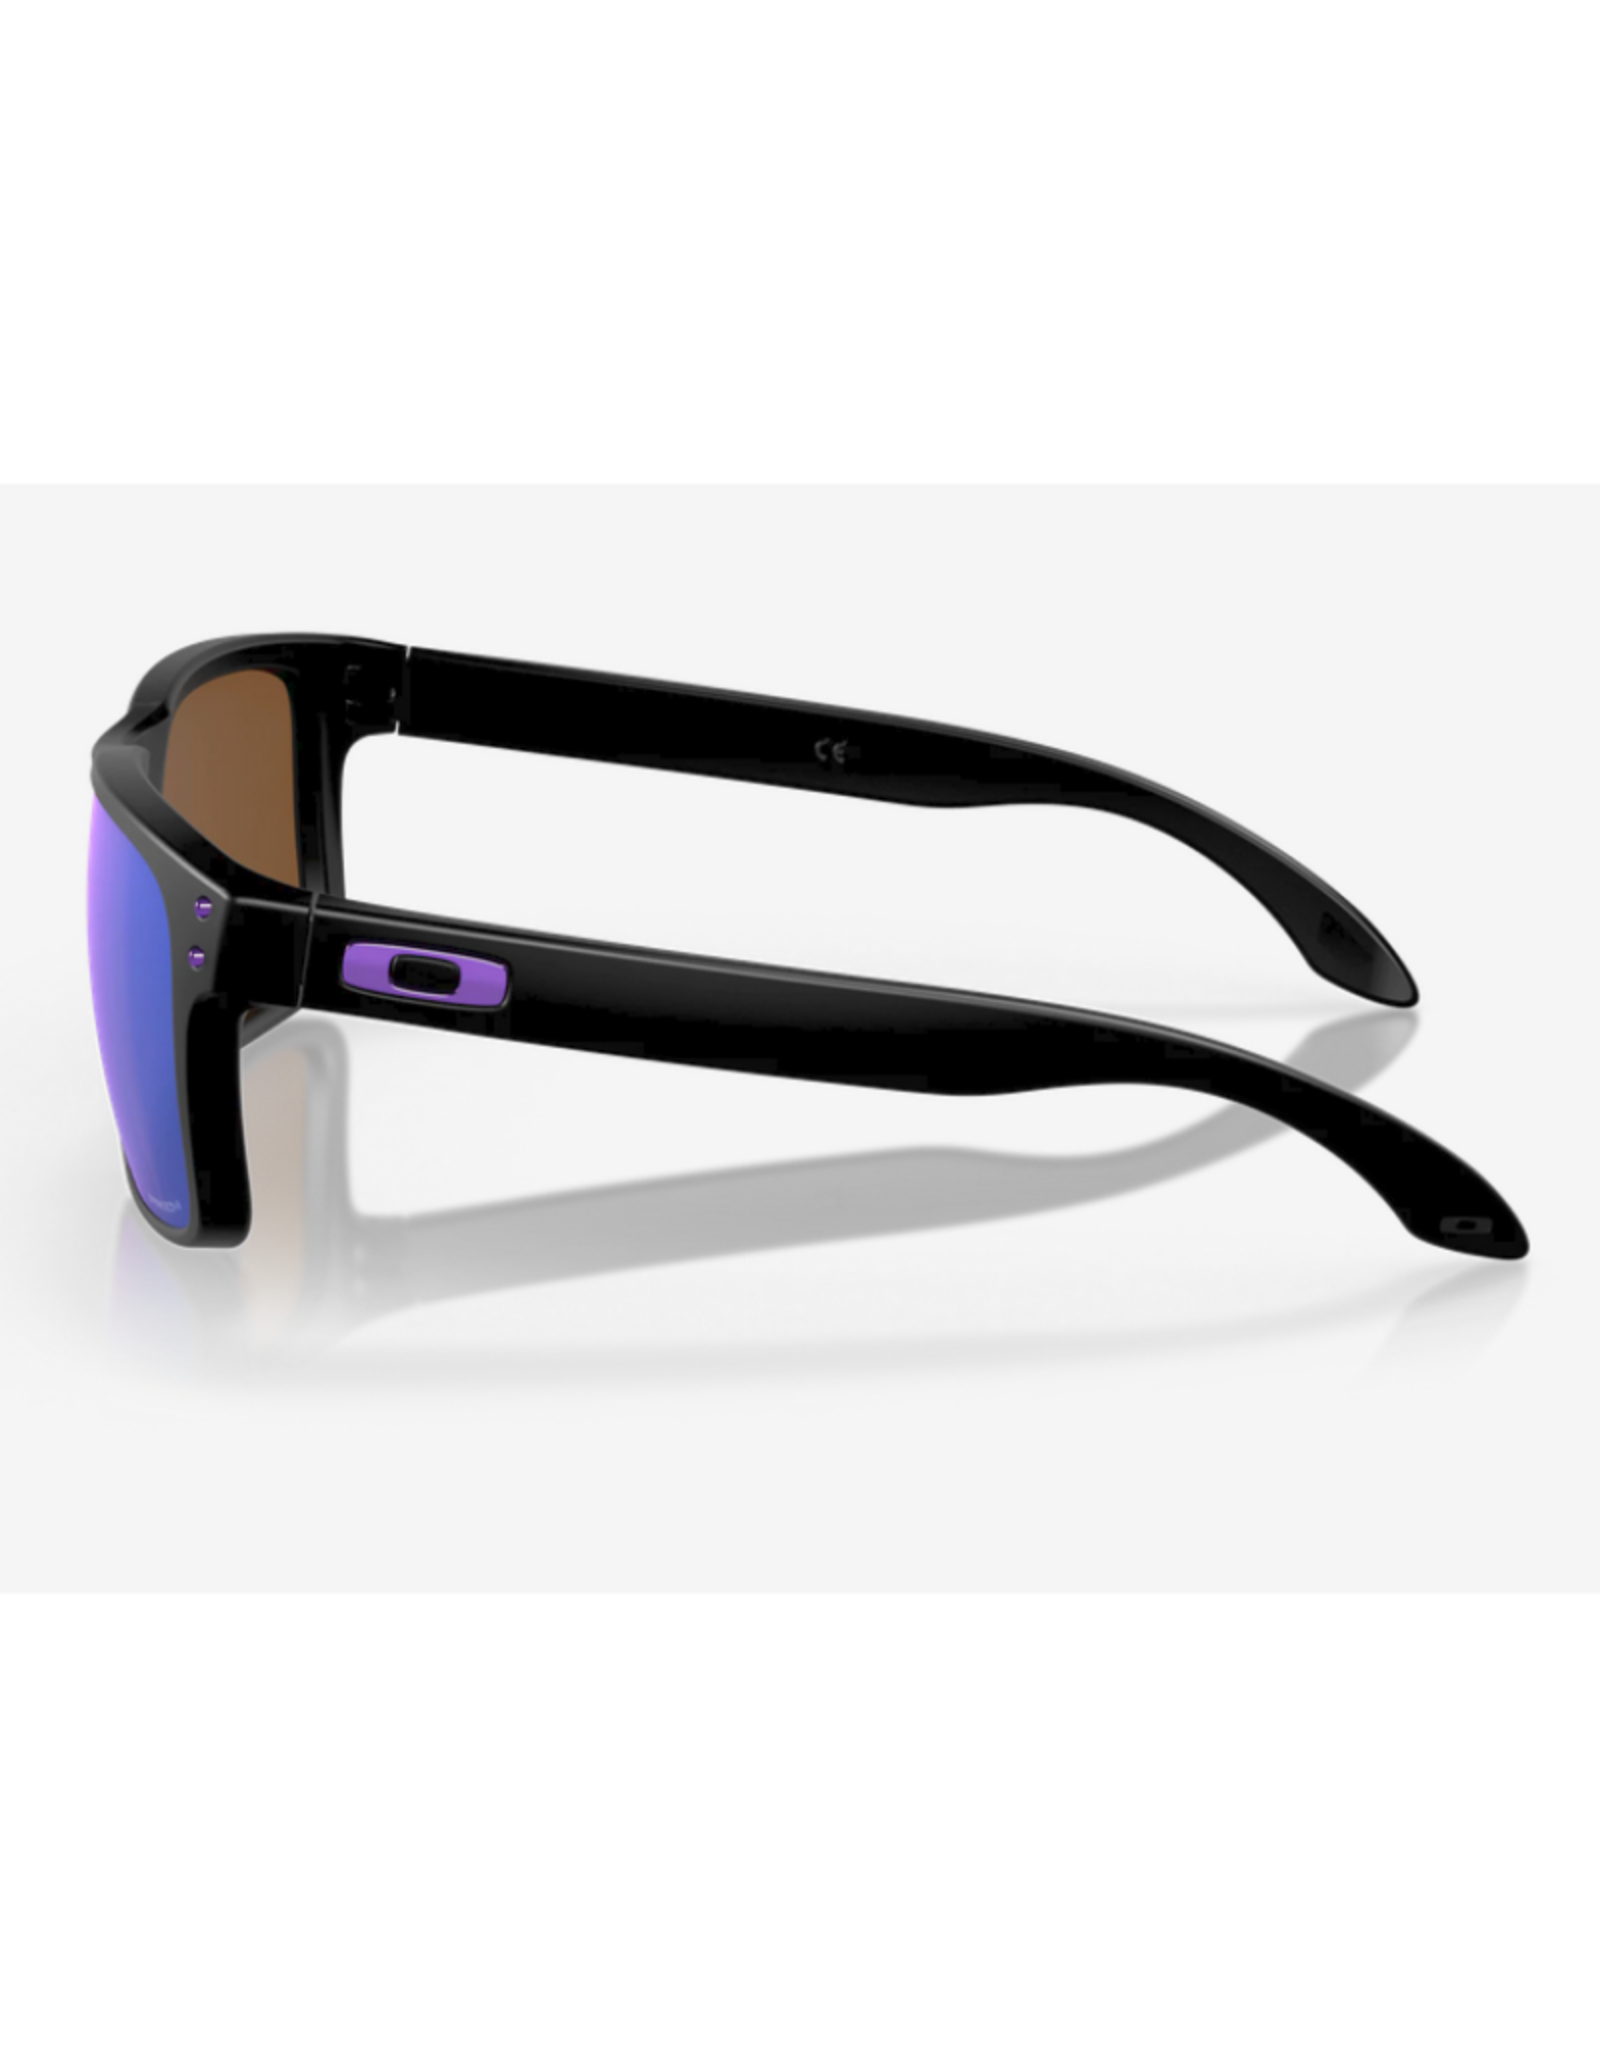 Oakley Holbrook Prizm Violet Lenses Matte Black Frame Sunglasses